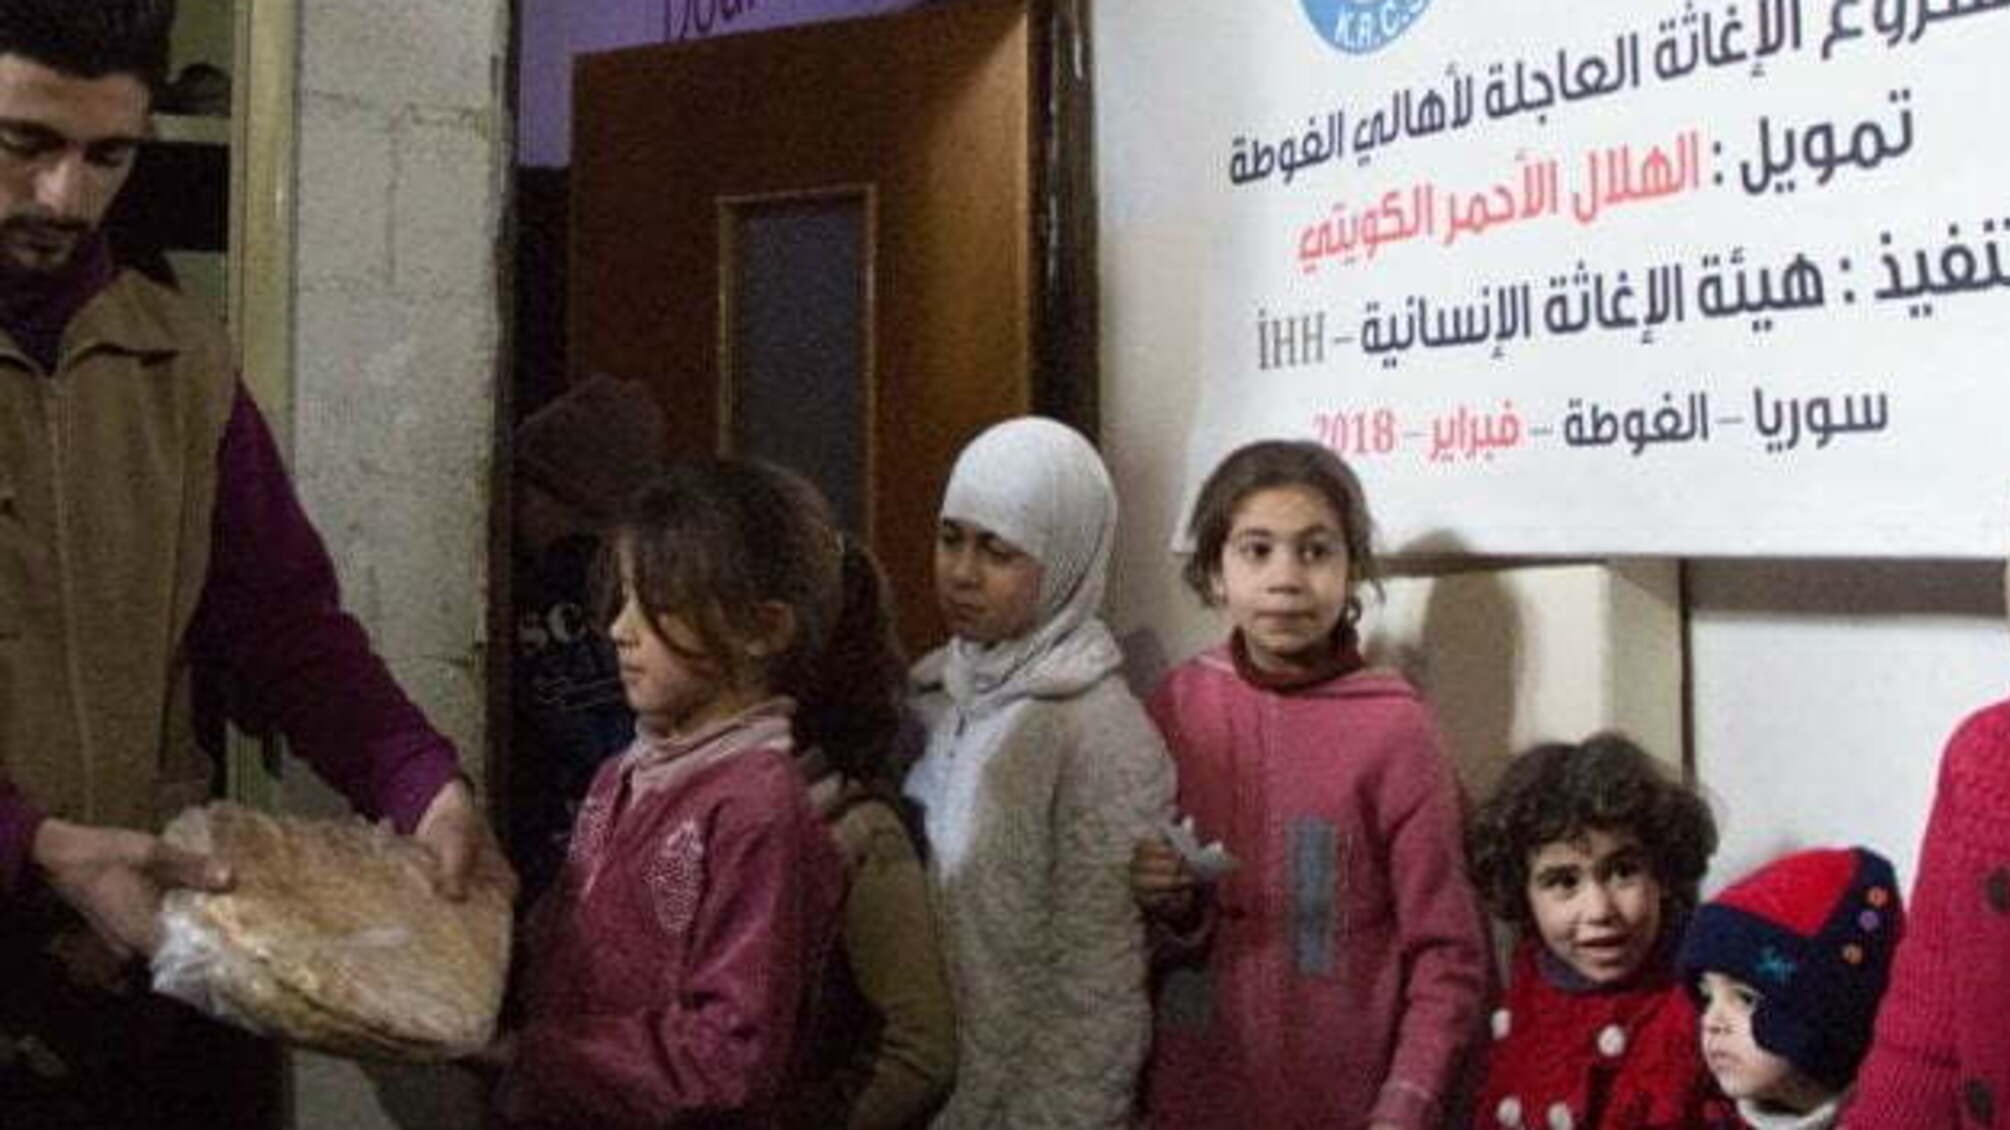 ООН закликала зібрати $10 мільярдів на гуманітарну допомогу сирійцям